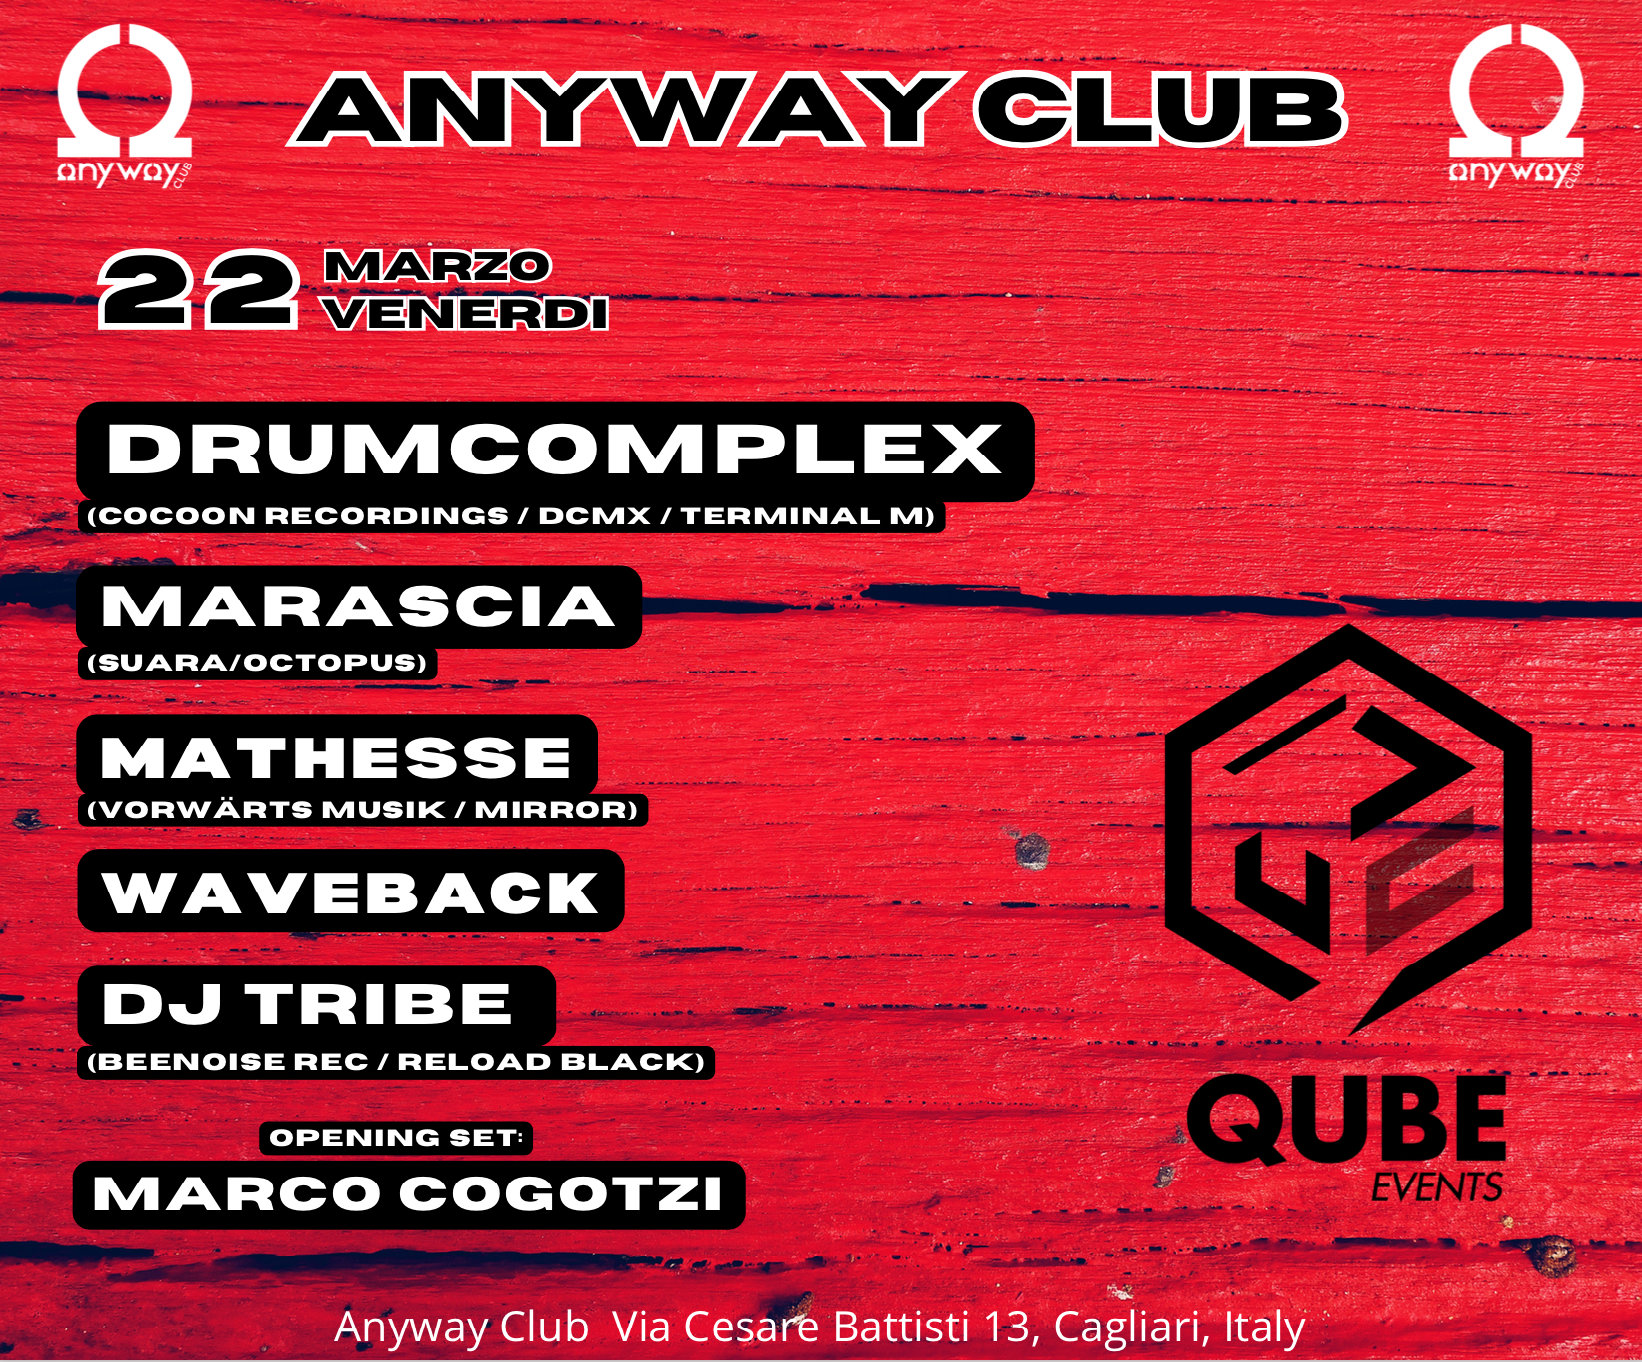 Qube events present: Drumcomplex Cagliari - フライヤー表